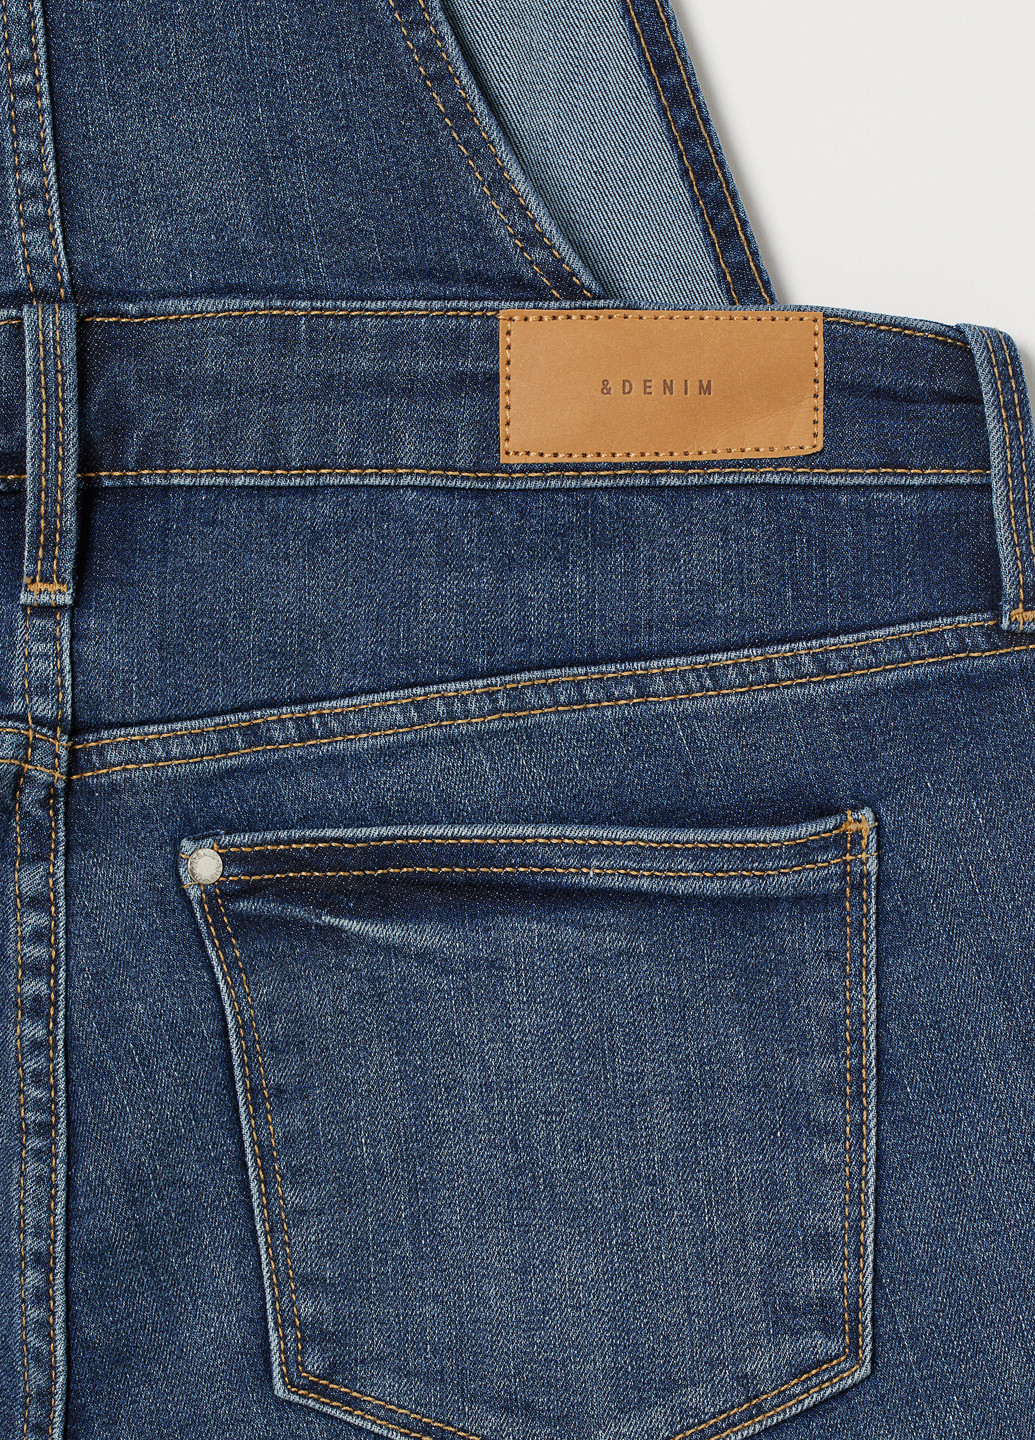 Комбинезон для беременных H&M комбинезон-брюки однотонный синий денил хлопок